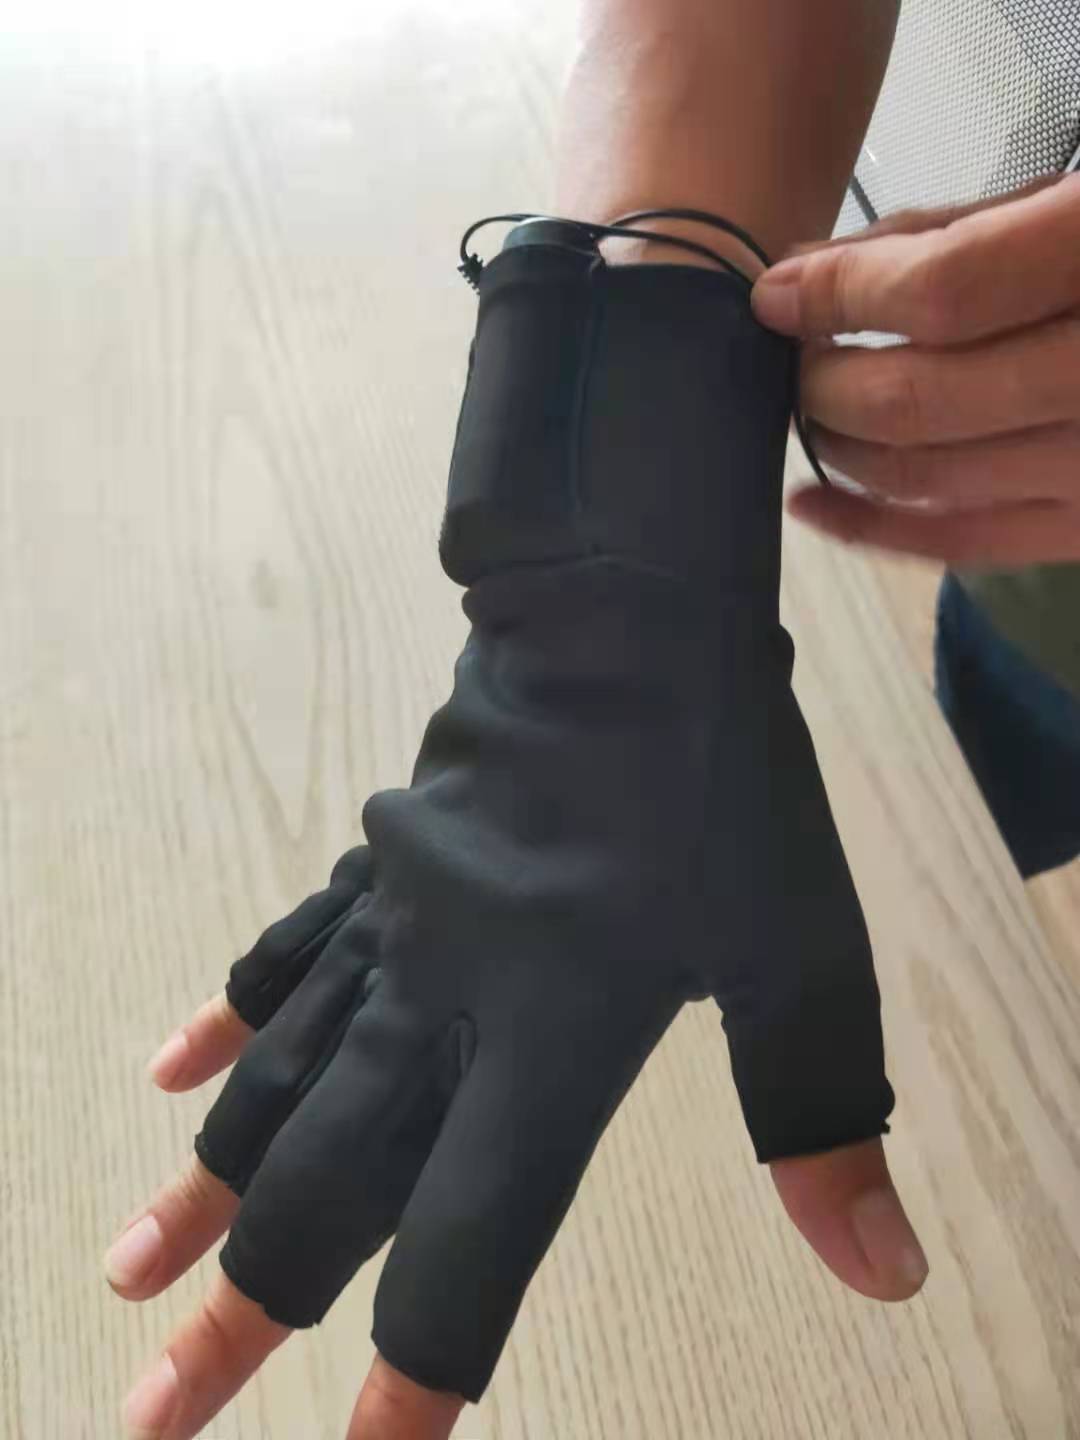 質量好學習手套廠家 學習翻手套相關